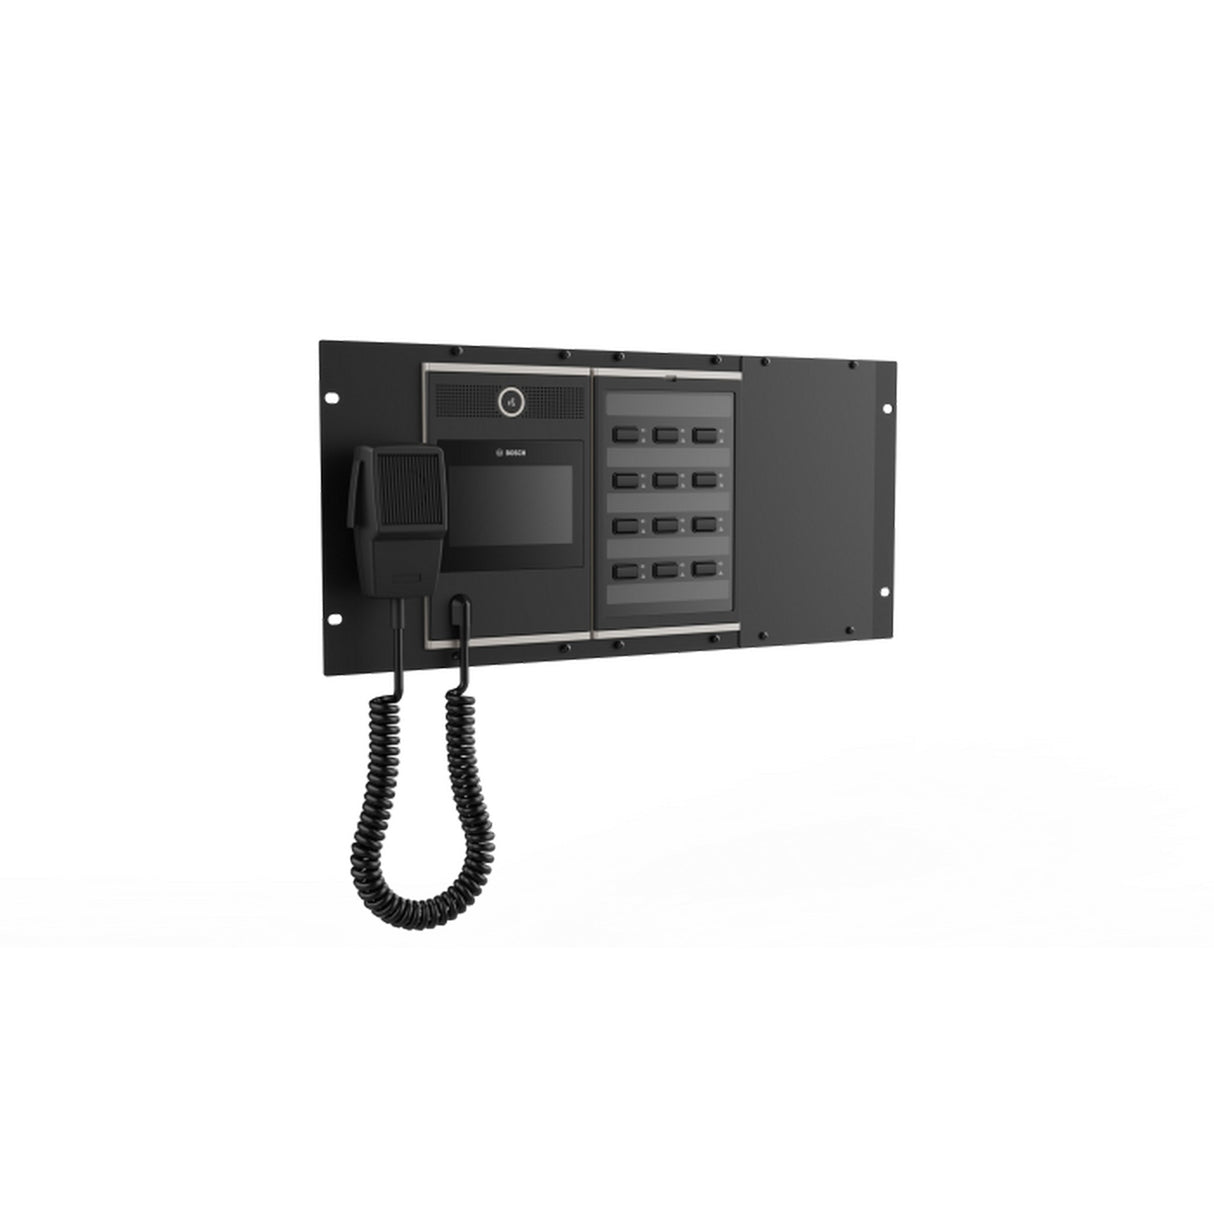 Bosch PSP-D00099 19-Inch 5HE Call Station Panel for PRAESENSA